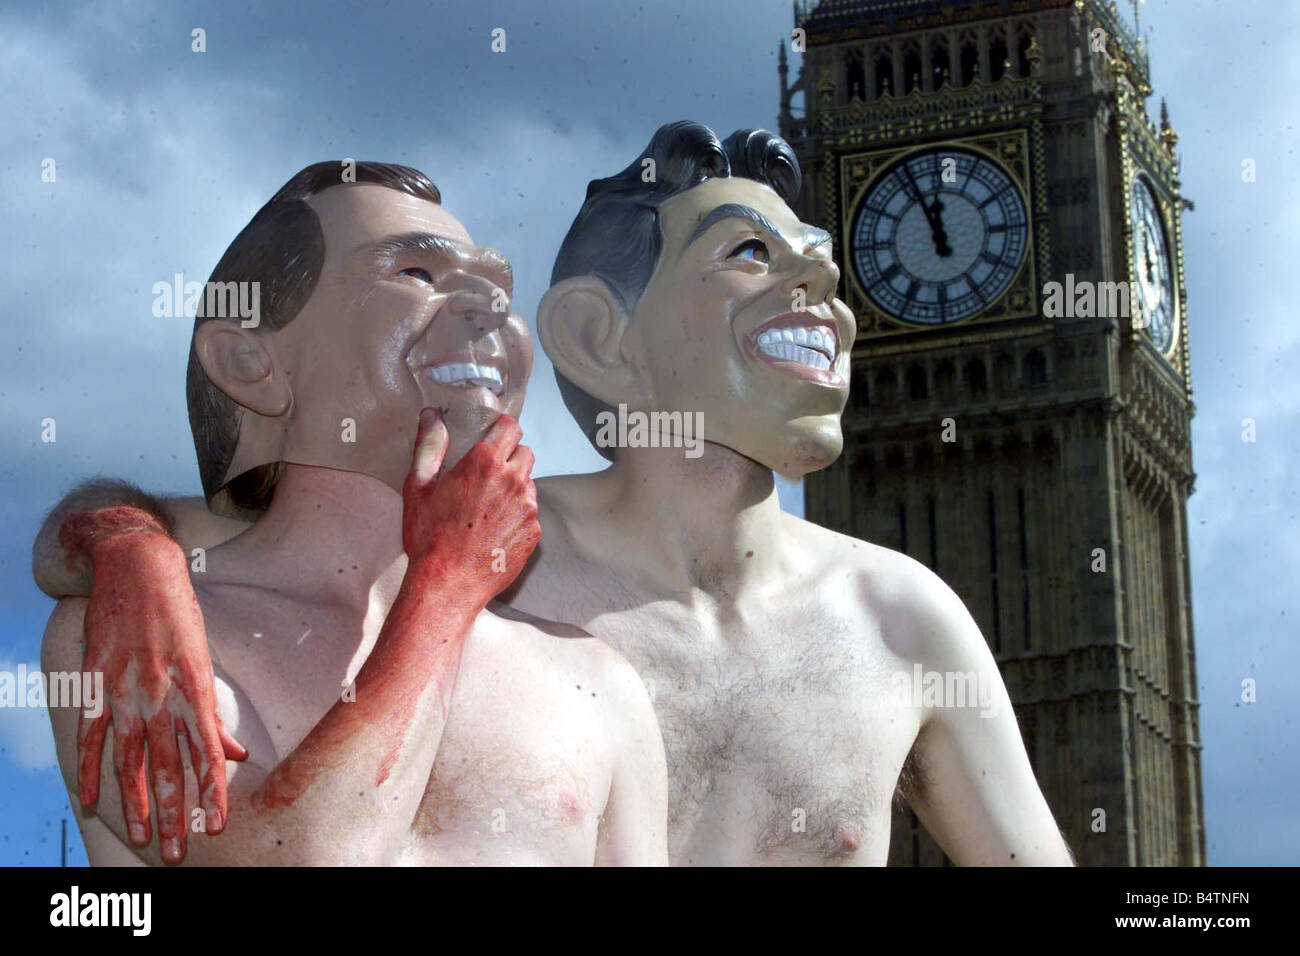 La guerre en Irak la guerre anti Septembre 2002 Manifestation devant le Parlement manifestants manifestants portant des masques masque Tony Blair George W Bush big ben du sang sur les mains Mirrorpix Banque D'Images